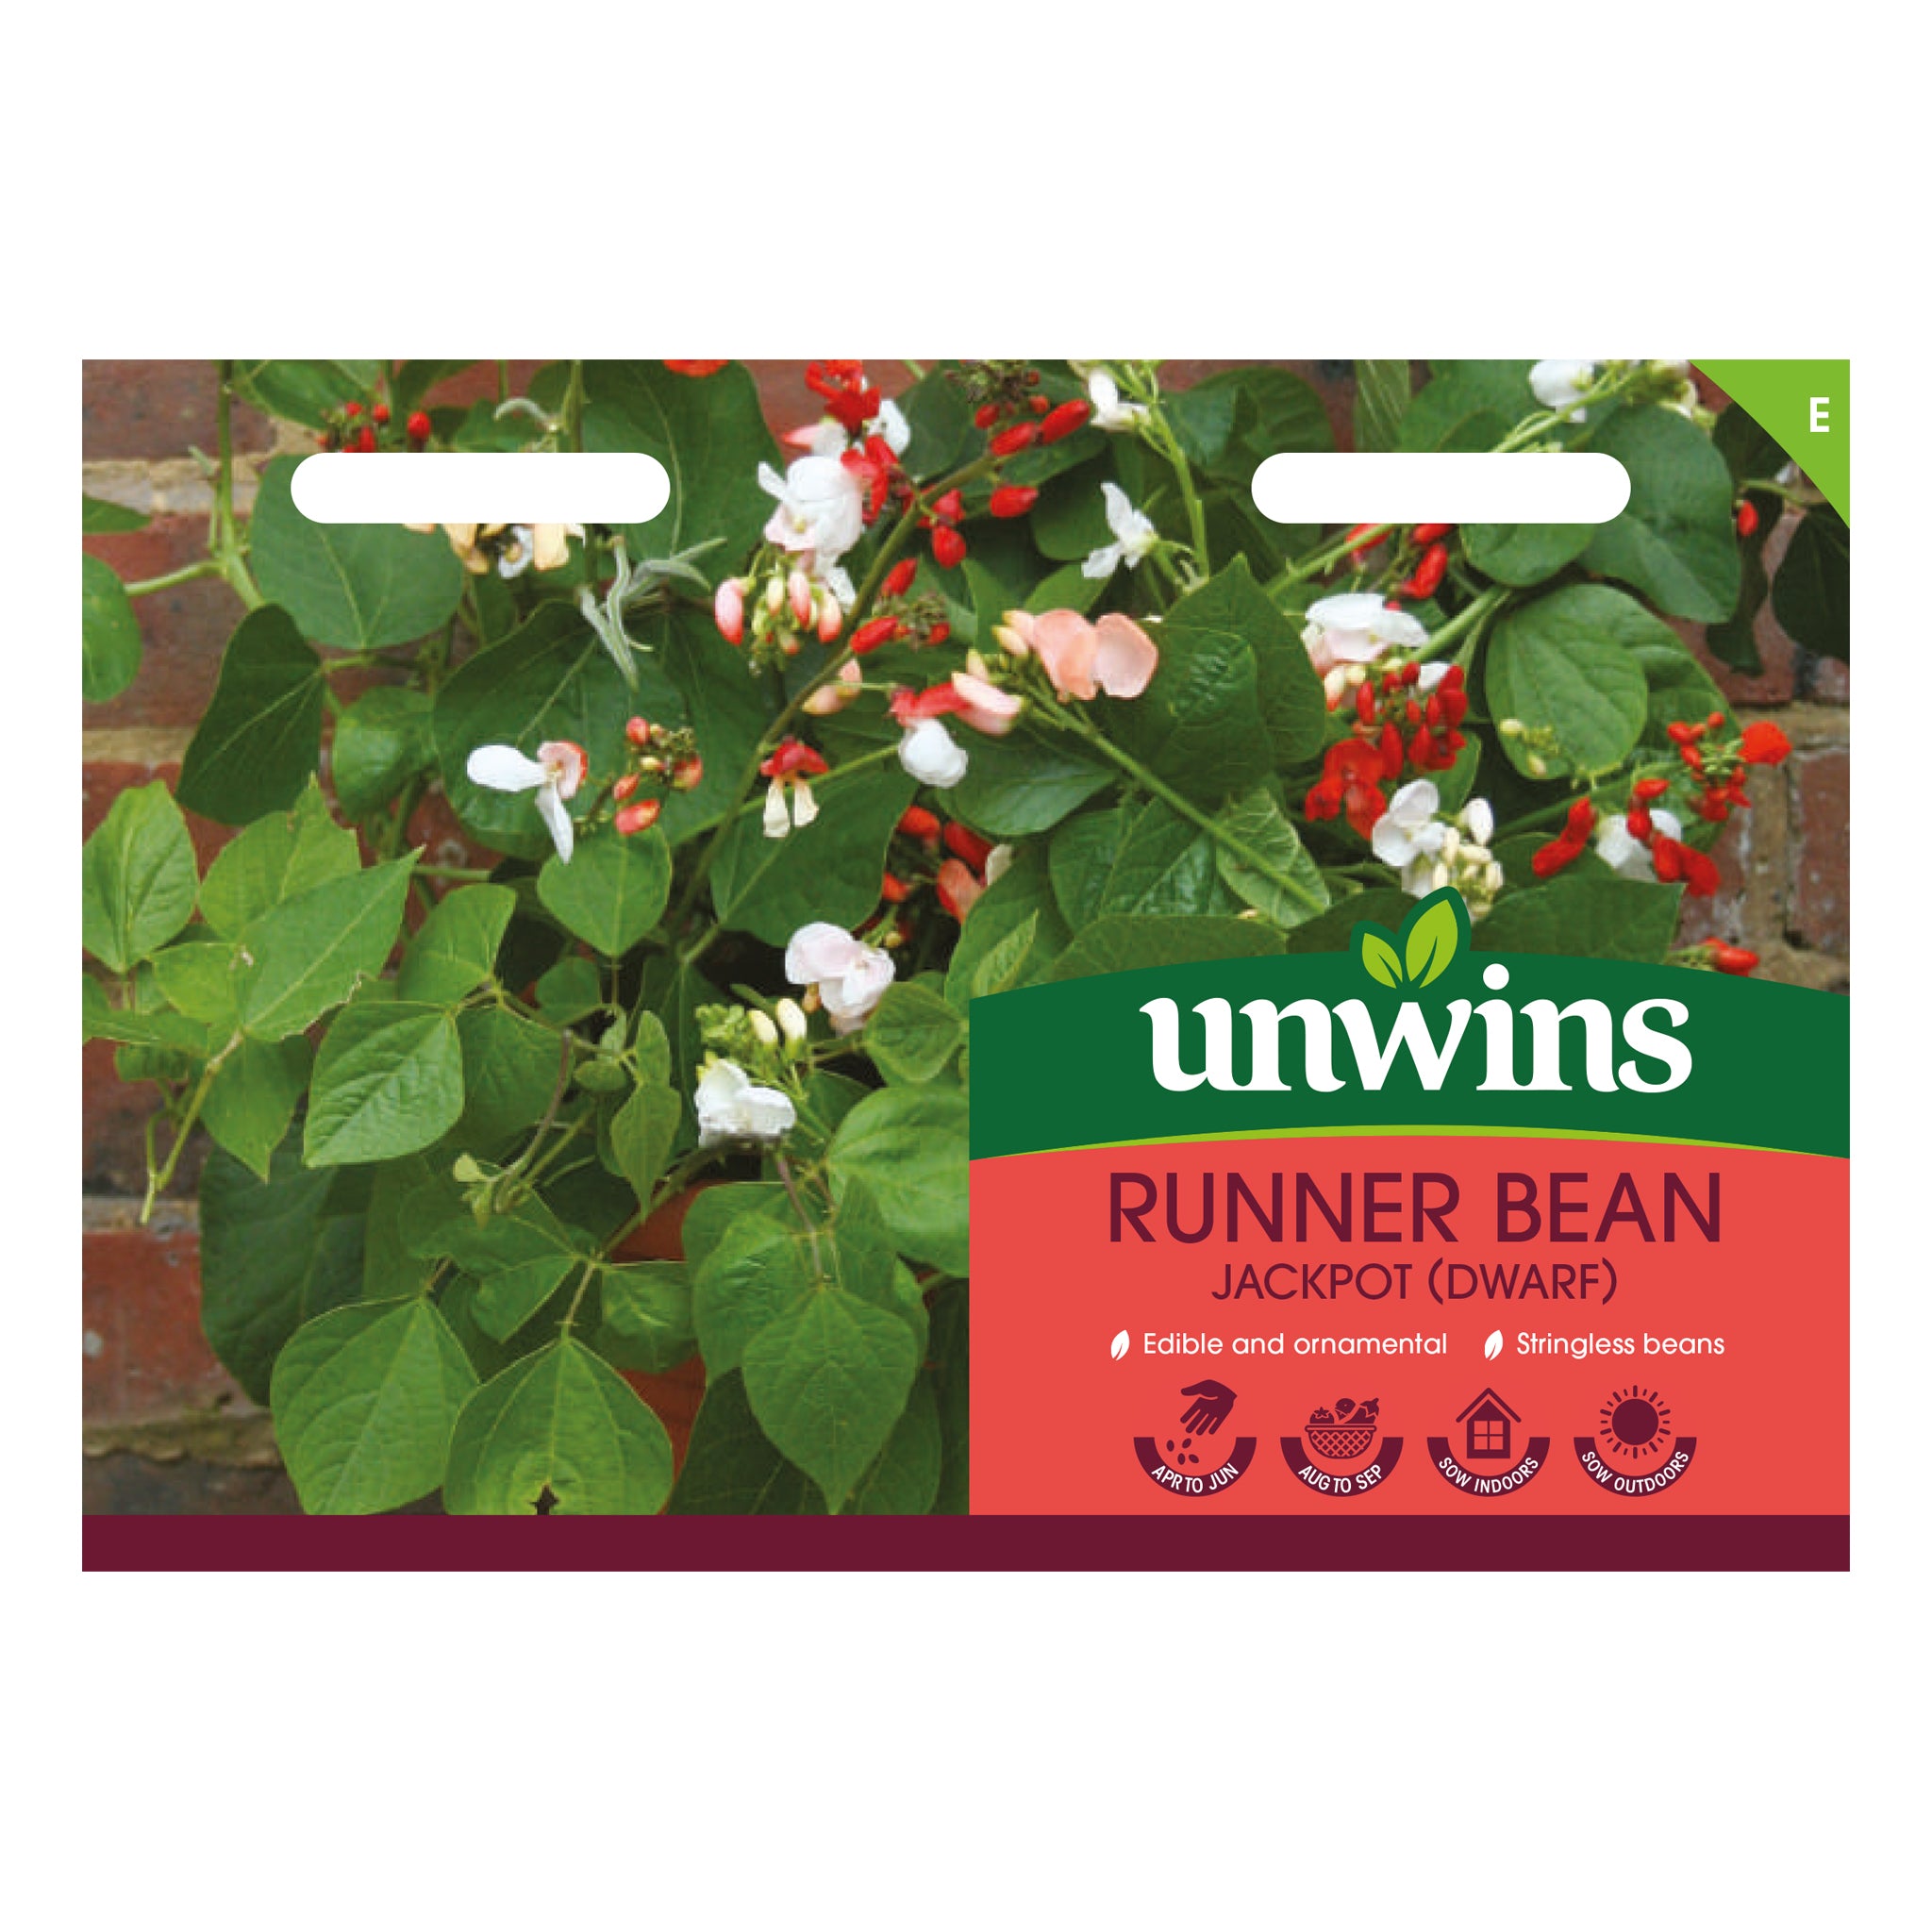 Unwins Dwarf Runner Bean Jackpot Seeds